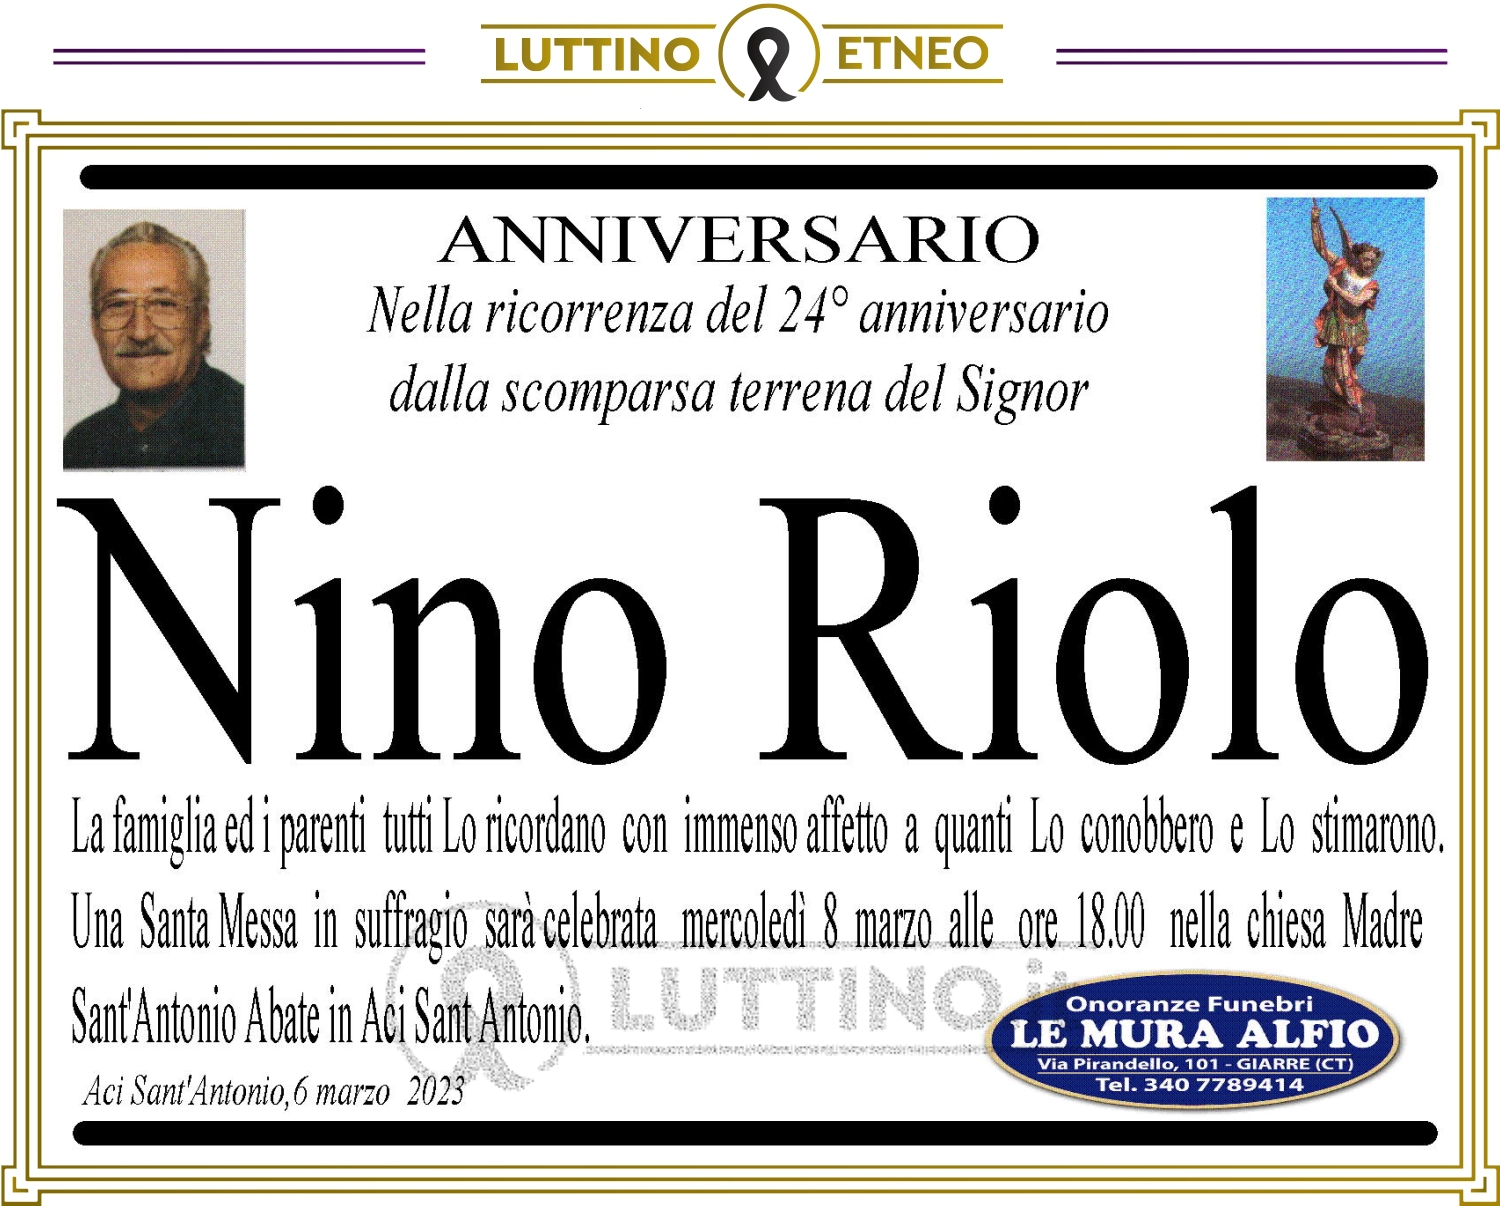 Nino Riolo